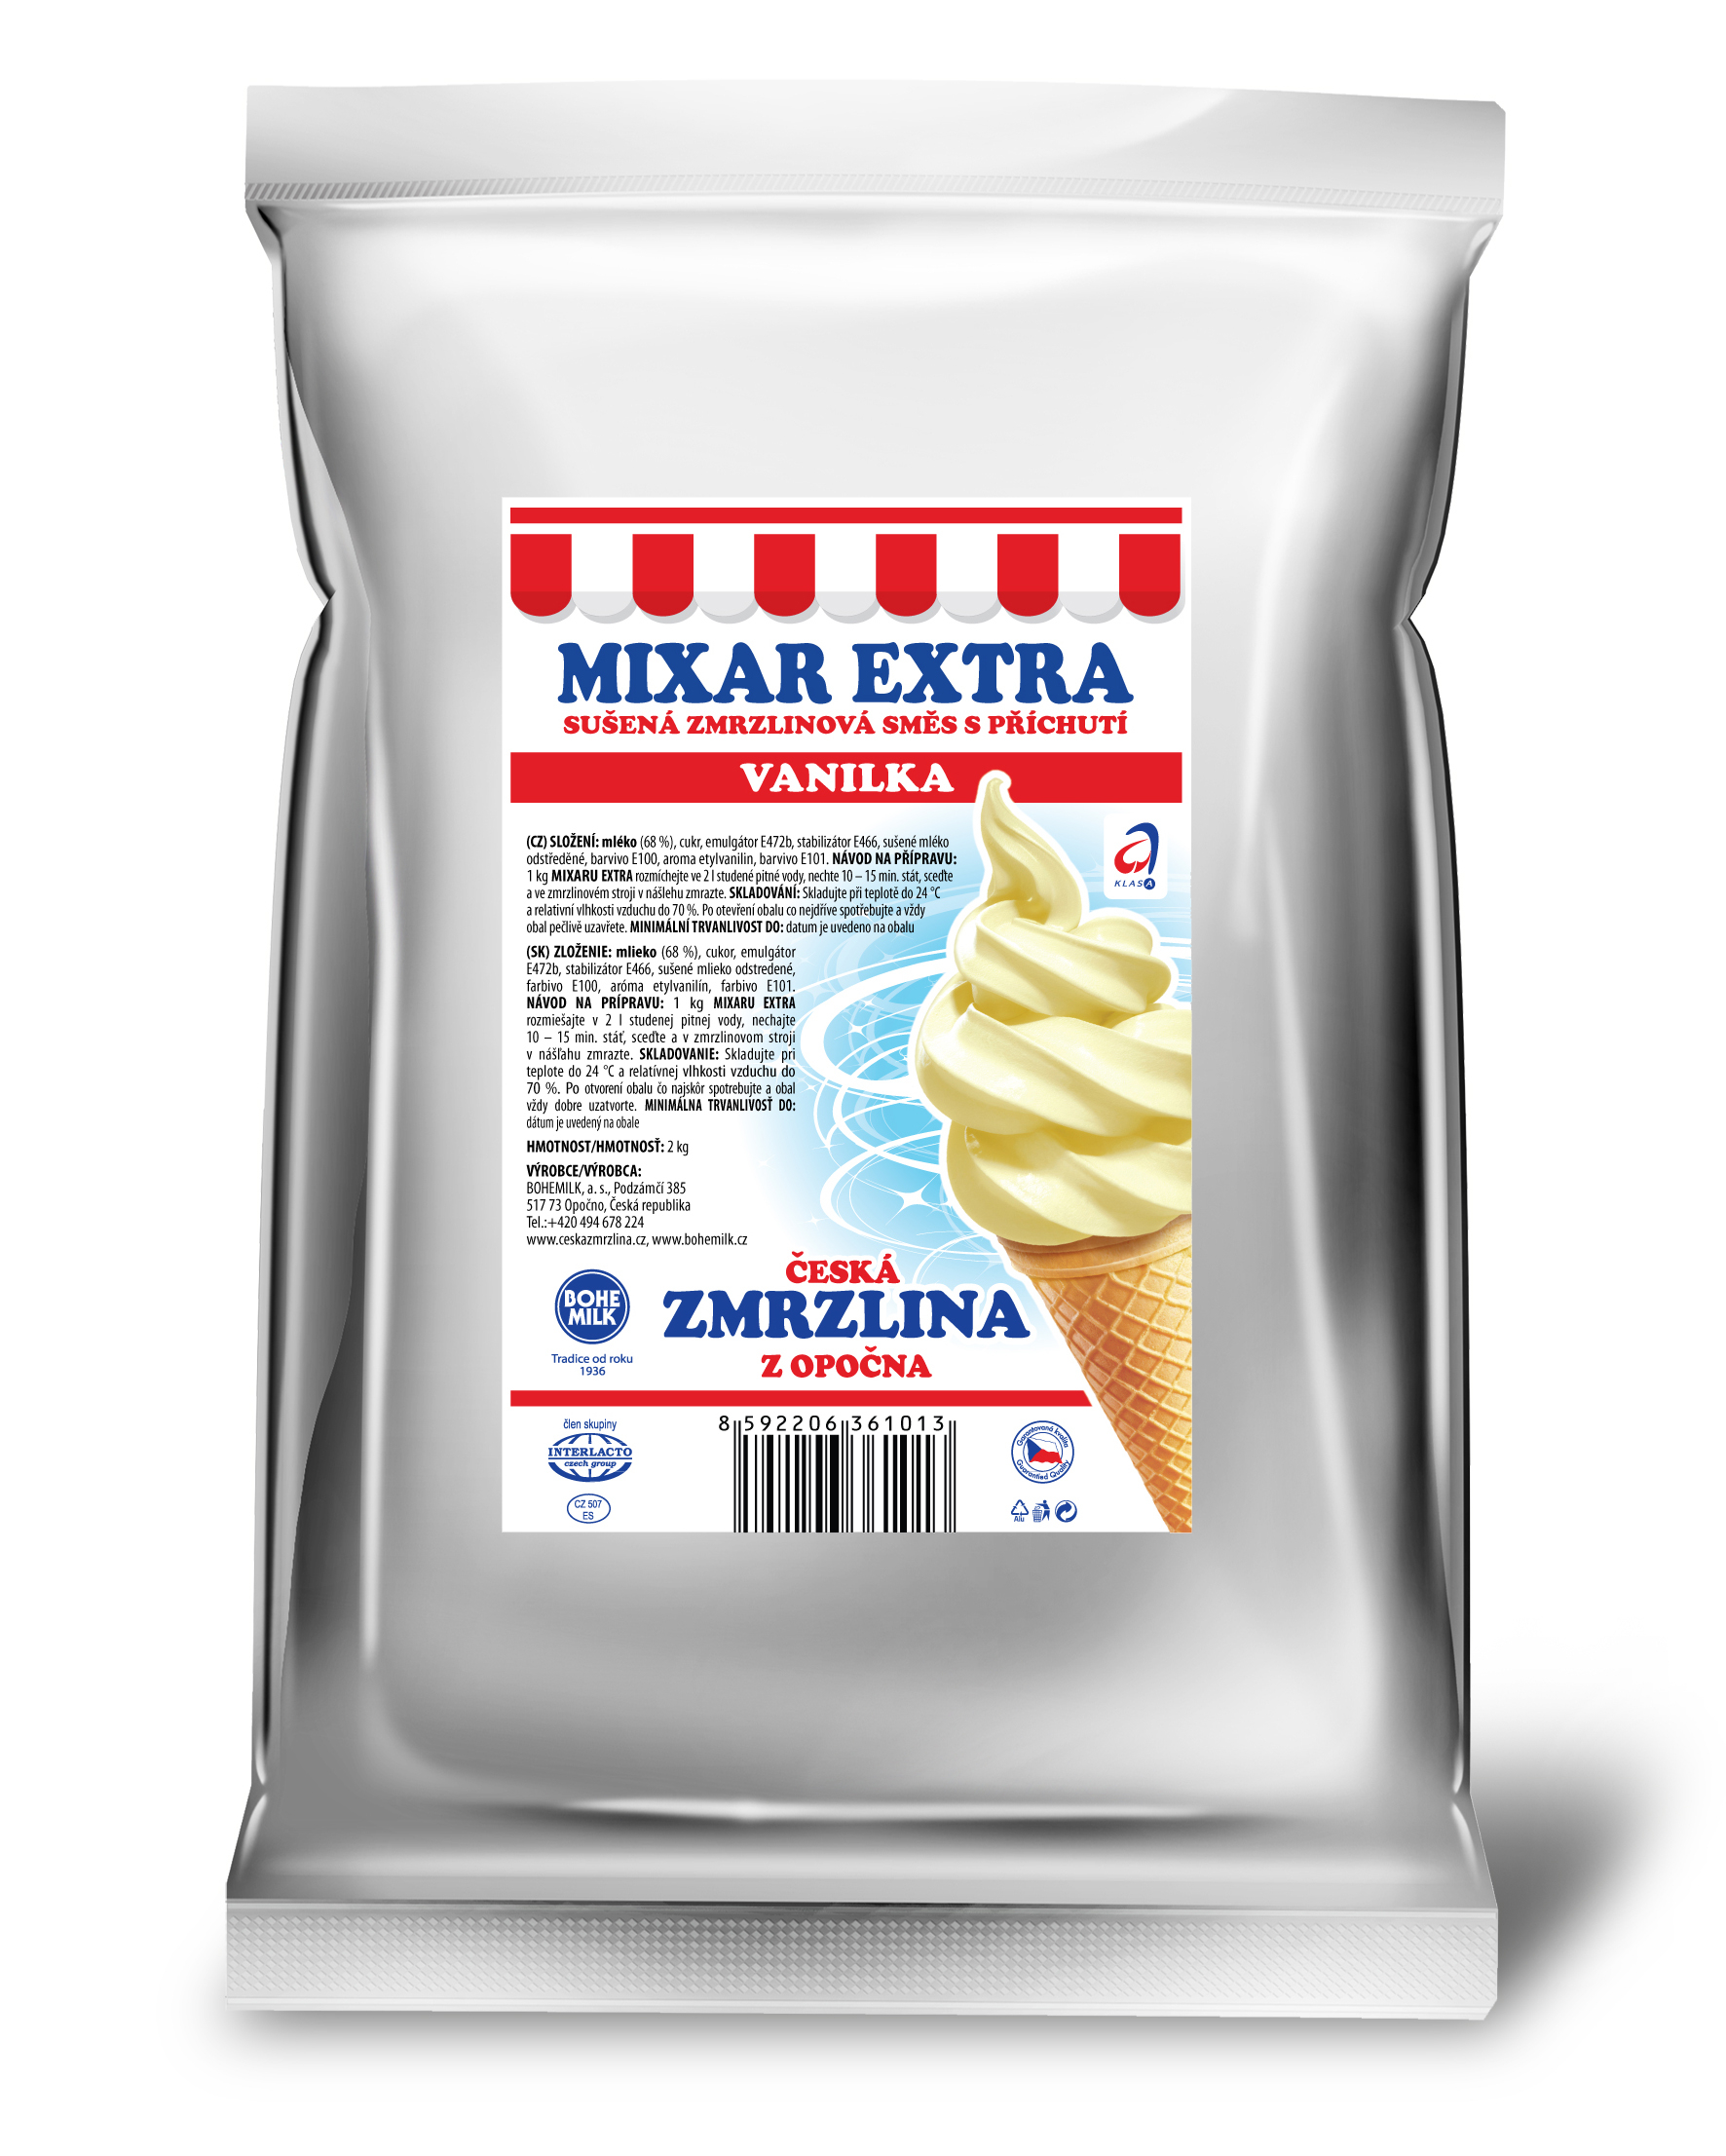 Směs na vanilkovou zmrzlinu z Opočna Mixar Extra Vanilka - 2 kg - Bohemilk  - Zmrzliny - Suroviny - Svět cukrářů